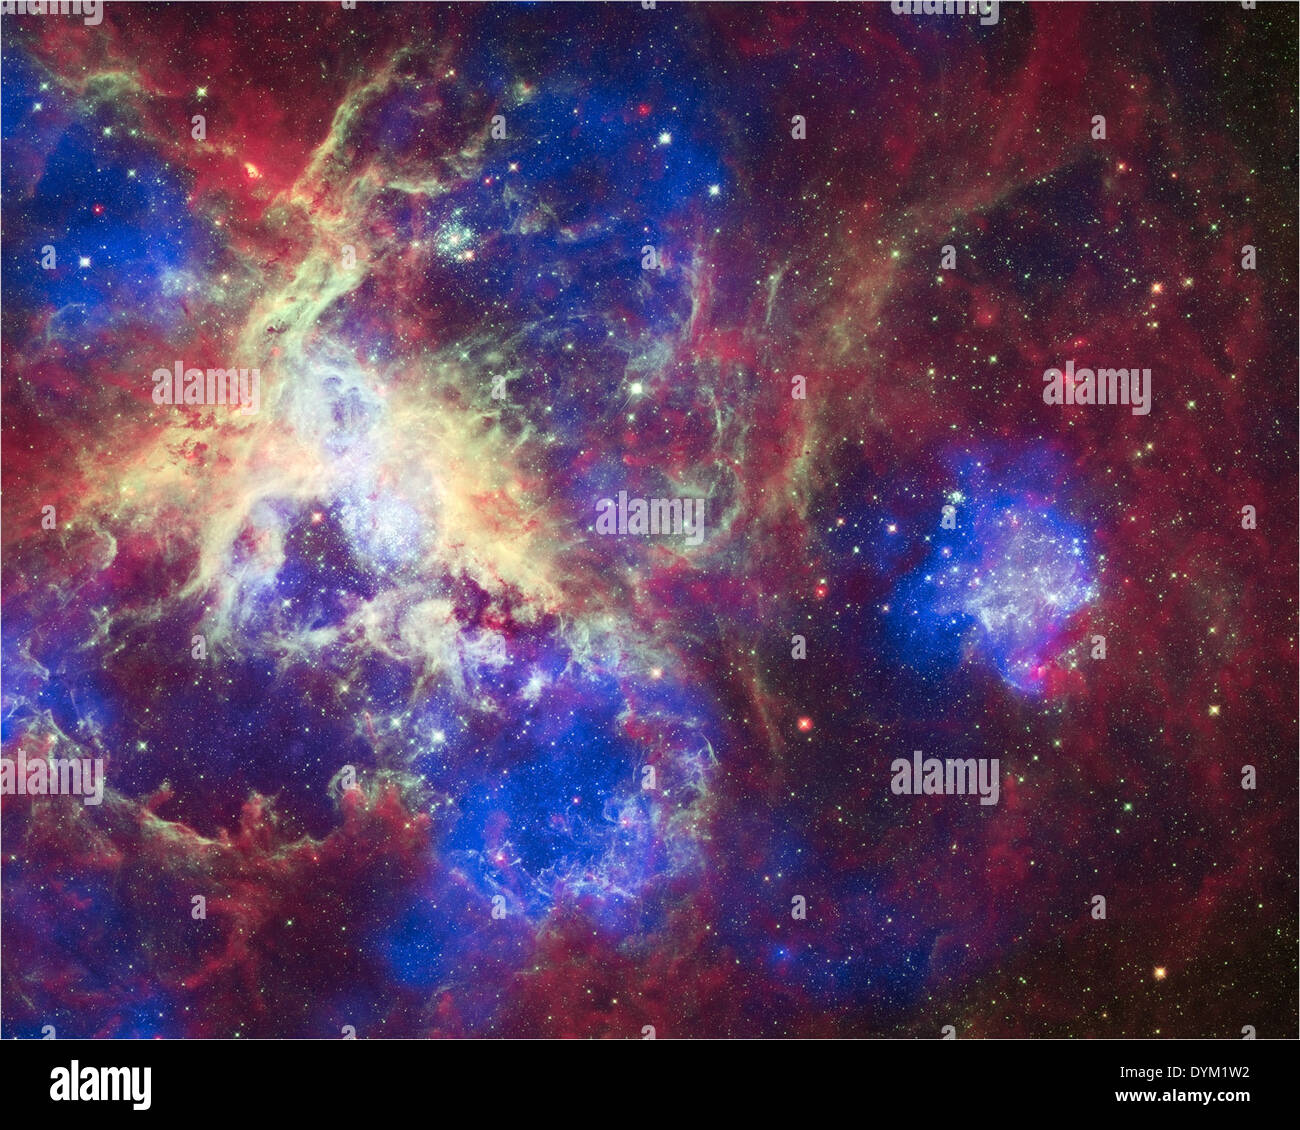 Dieser Verbund aus 30 Doradus, auch Tarantula-Nebel genannt, enthält Daten von Chandra (blau), Hubble (grün) und Spitzer (rot). Der Tarantula-Nebel liegt in der Großen Magellanschen Wolke und ist eine der größten sternbildenden Regionen in der Nähe der Milchstraße. Chandra's Röntgenstrahlen erkennen Gas, das von Sternwinden und Supernovas auf Millionen Grad erhitzt wurde. Diese hochenergetische Stellaktivität erzeugt Stoßfronten, die mit Schallausbrüten vergleichbar sind. Hubble zeigt das Licht massiver Sterne in verschiedenen Stadien der Sterngeburt, während Spitzer zeigt, wo das relativ kühlere Gas und Staub liegen. Stockfoto